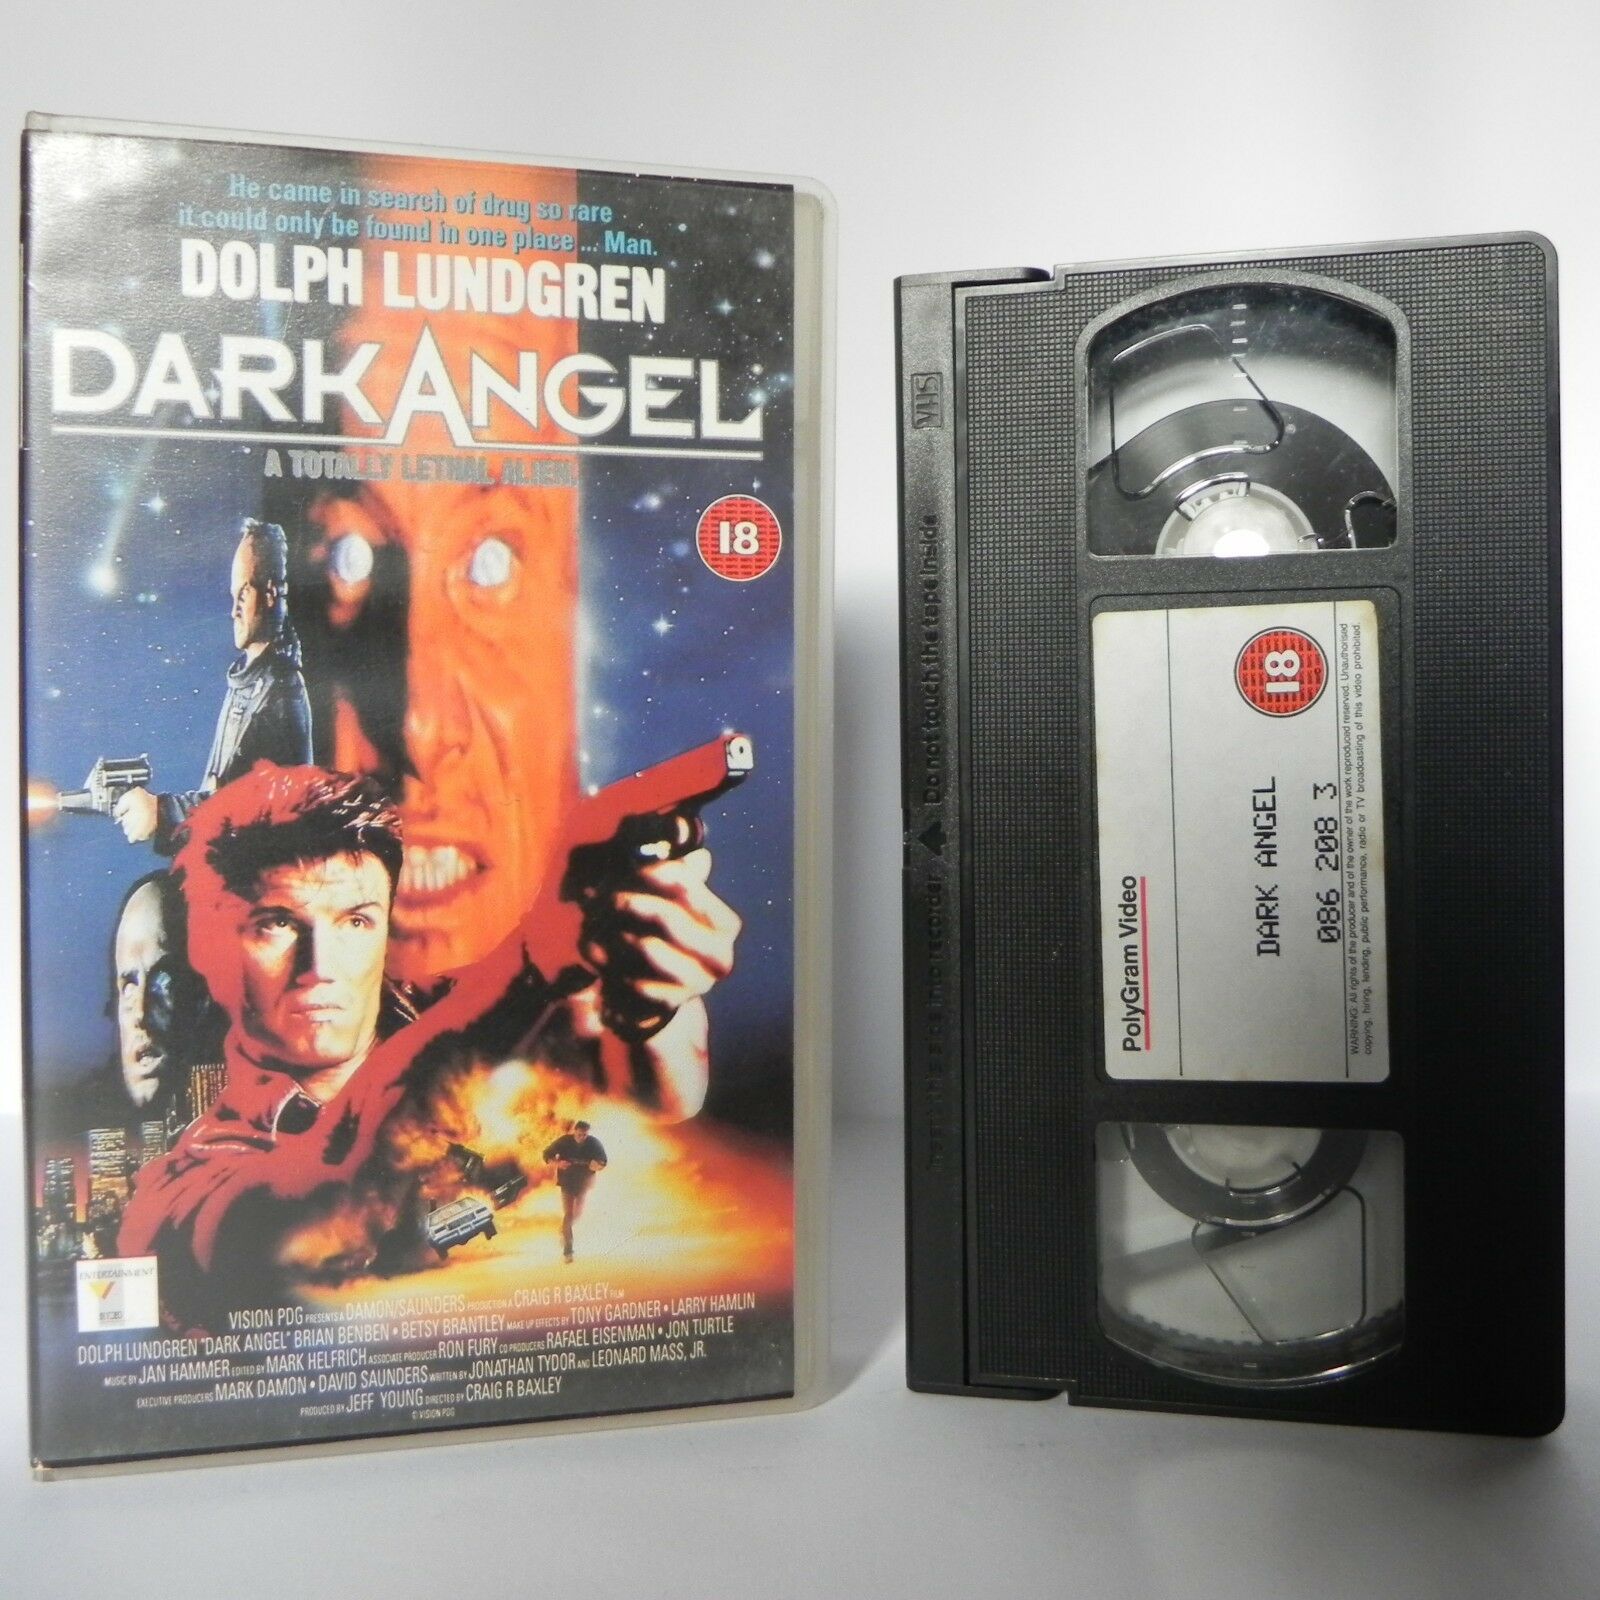 Dark Angel - (1993) PolyGram - Action - Sci-Fi - Futuristic - Lundgren - VHS-